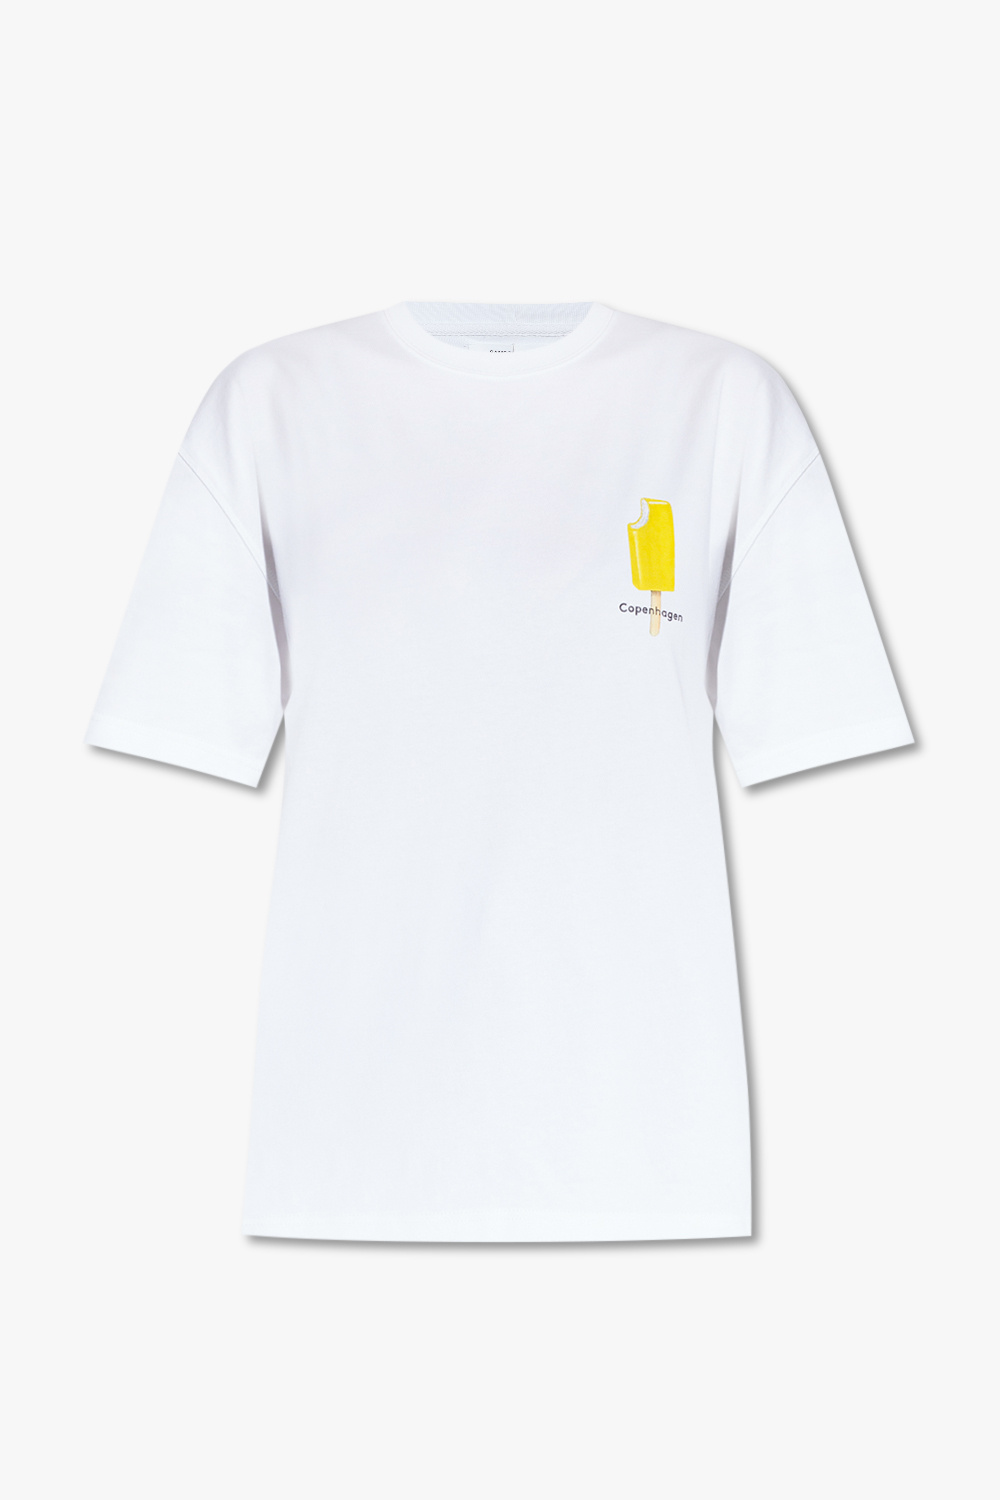 Samsøe Samsøe ‘Souvenir’ T-shirt